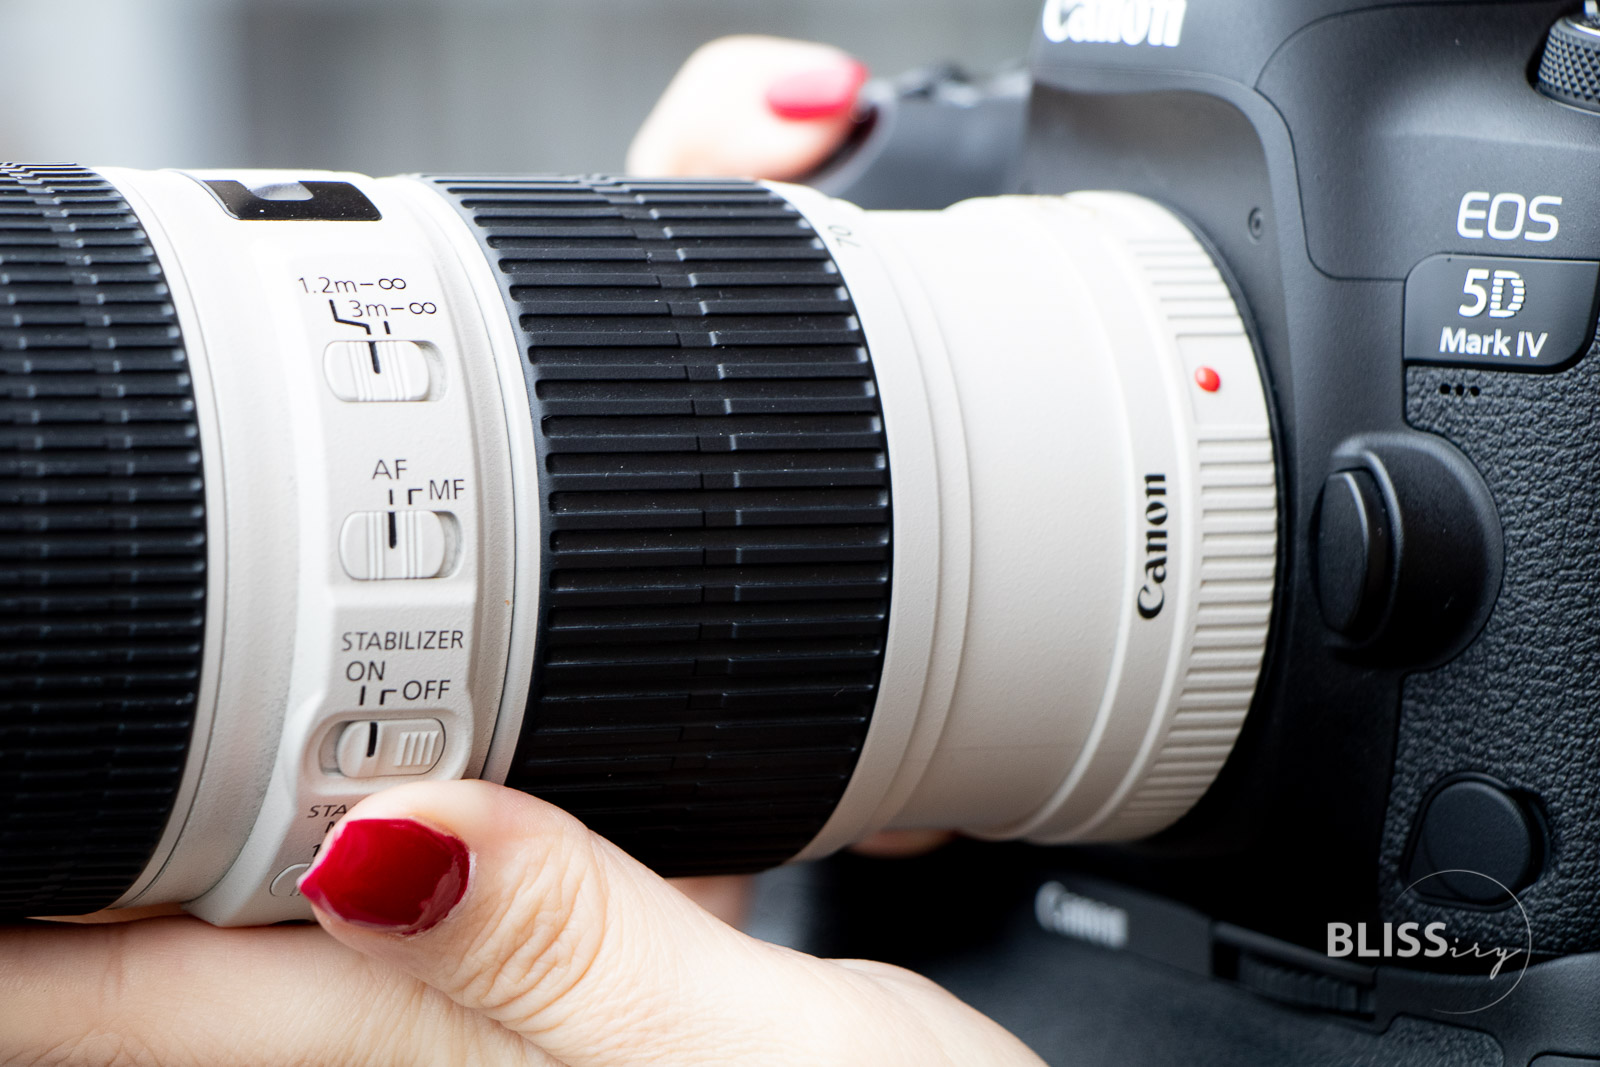 Canon 70-200 f2.8 L IS II USM oder f4.0 - Test und Entscheidungshilfe - Lohnt sich das Canon Teleobjektiv - Bewertung und Erfahrungsberichte